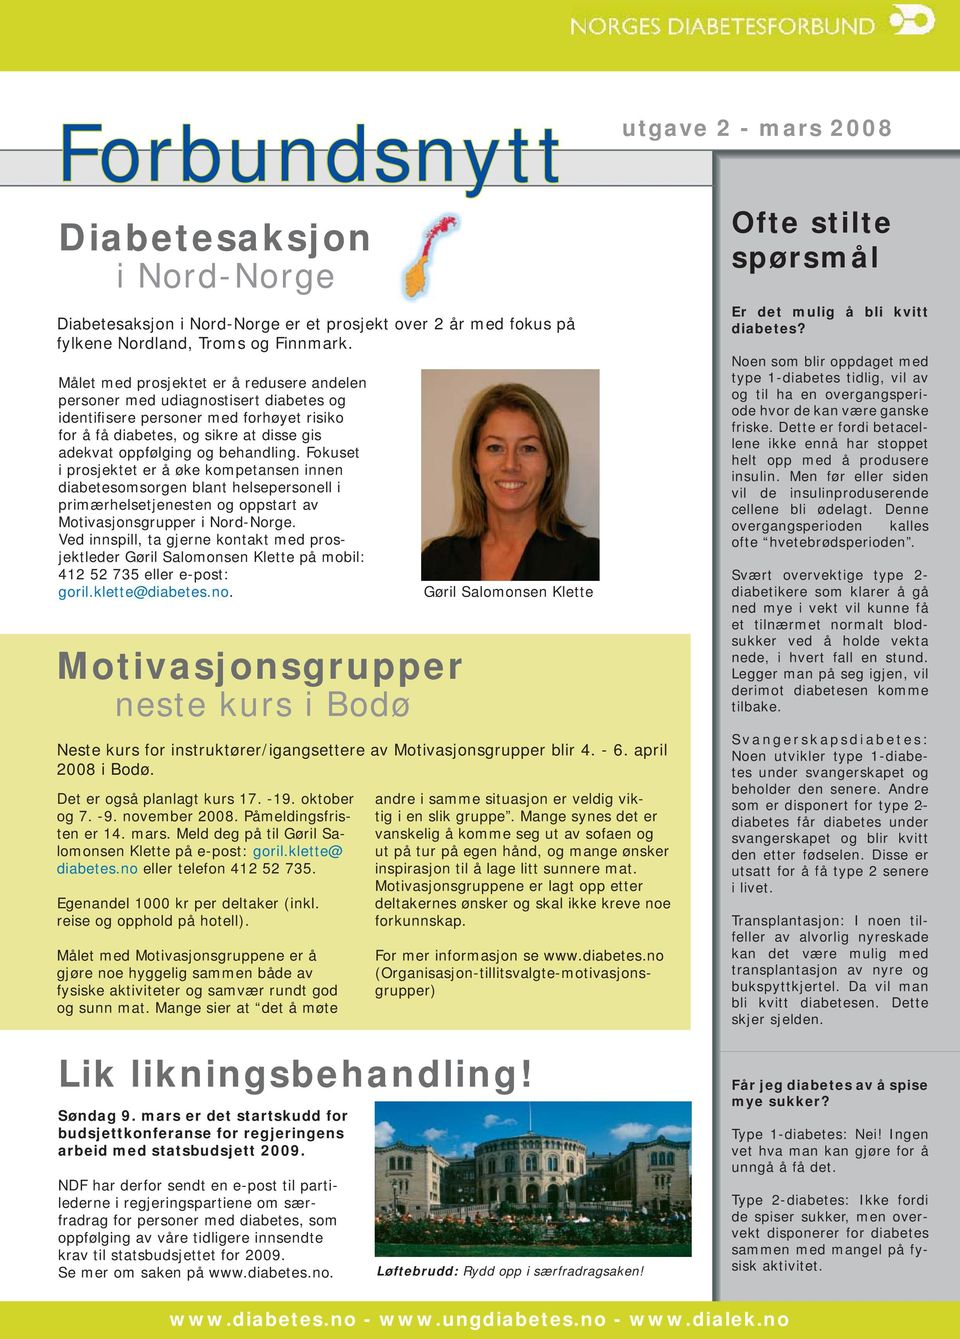 Fokuset i prosjektet er å øke kompetansen innen diabetesomsorgen blant helsepersonell i primærhelsetjenesten og oppstart av Motivasjonsgrupper i Nord-Norge.